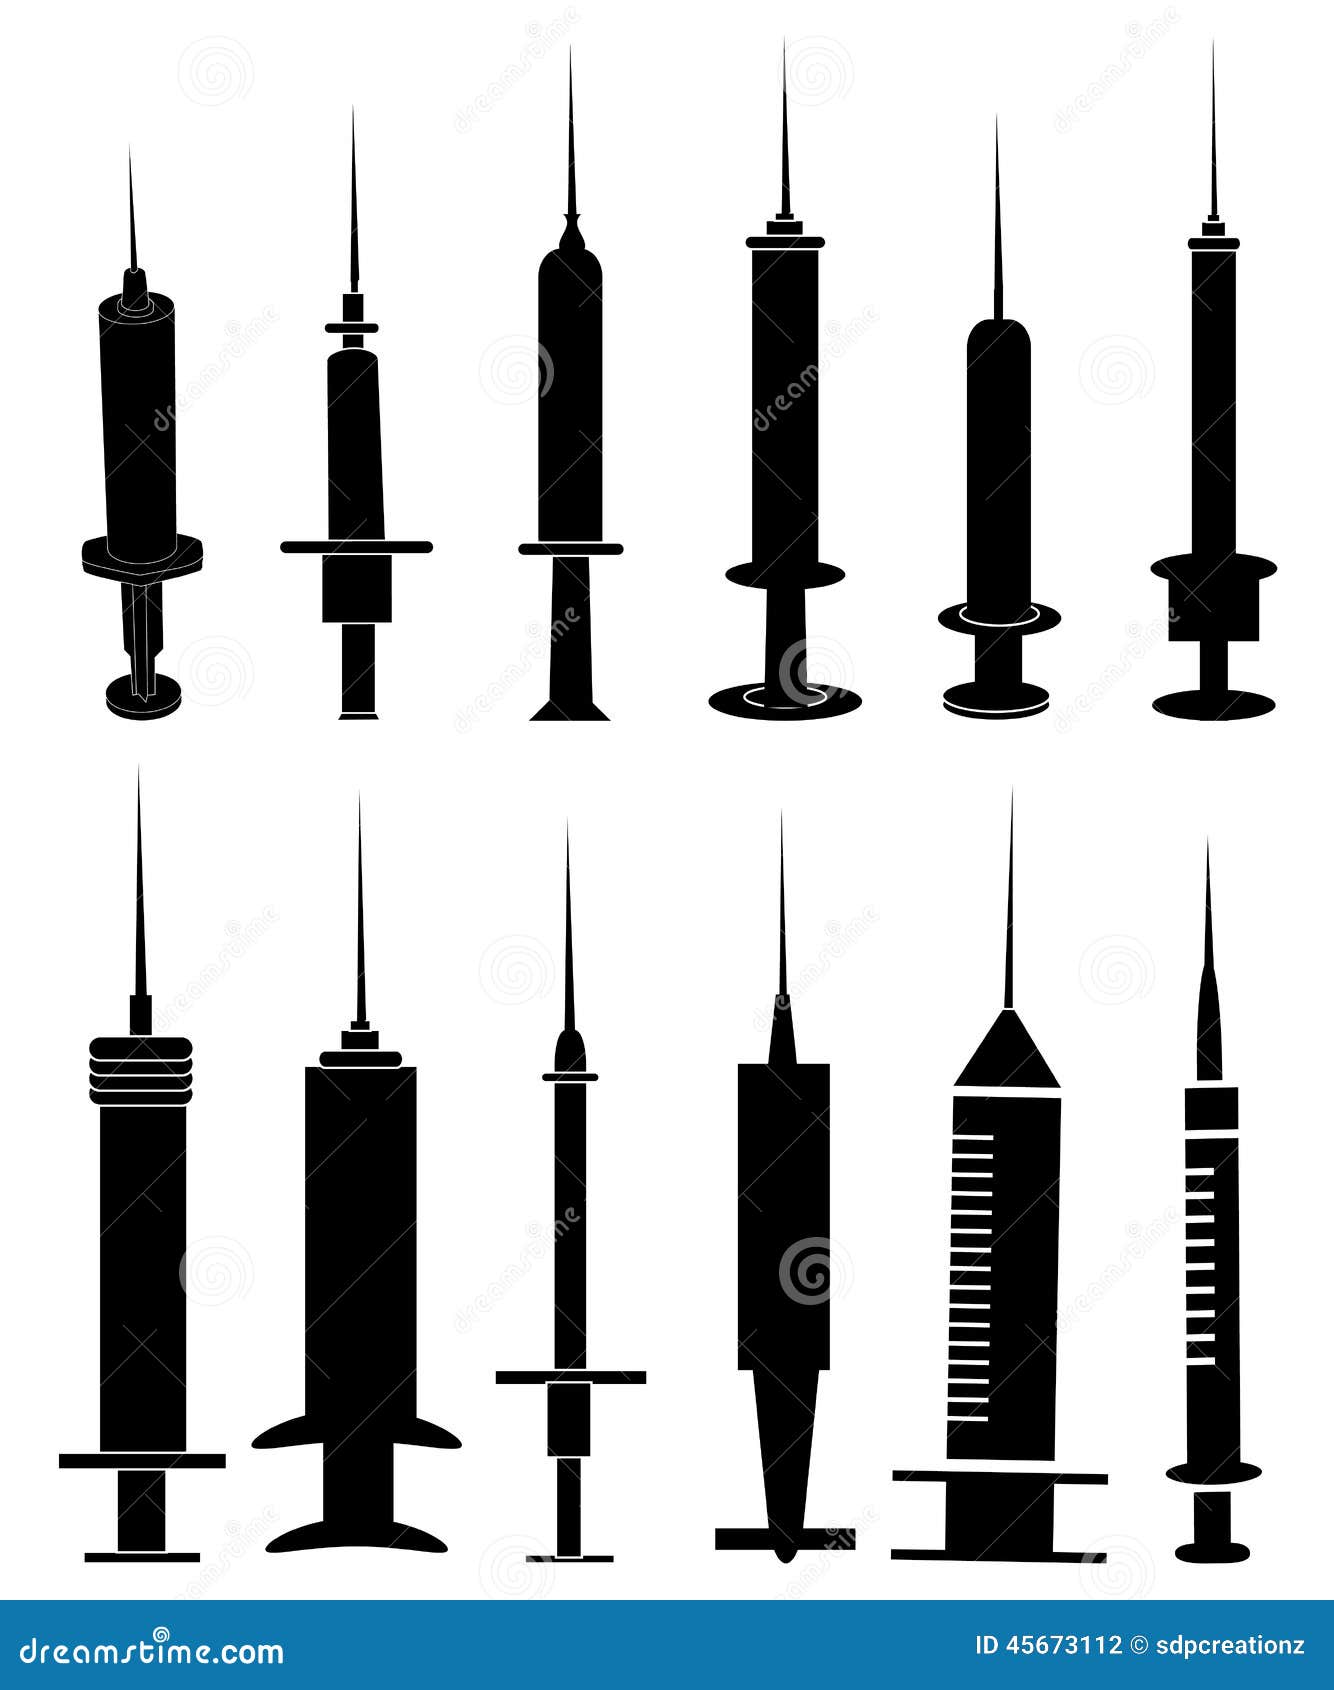 syringe icons set